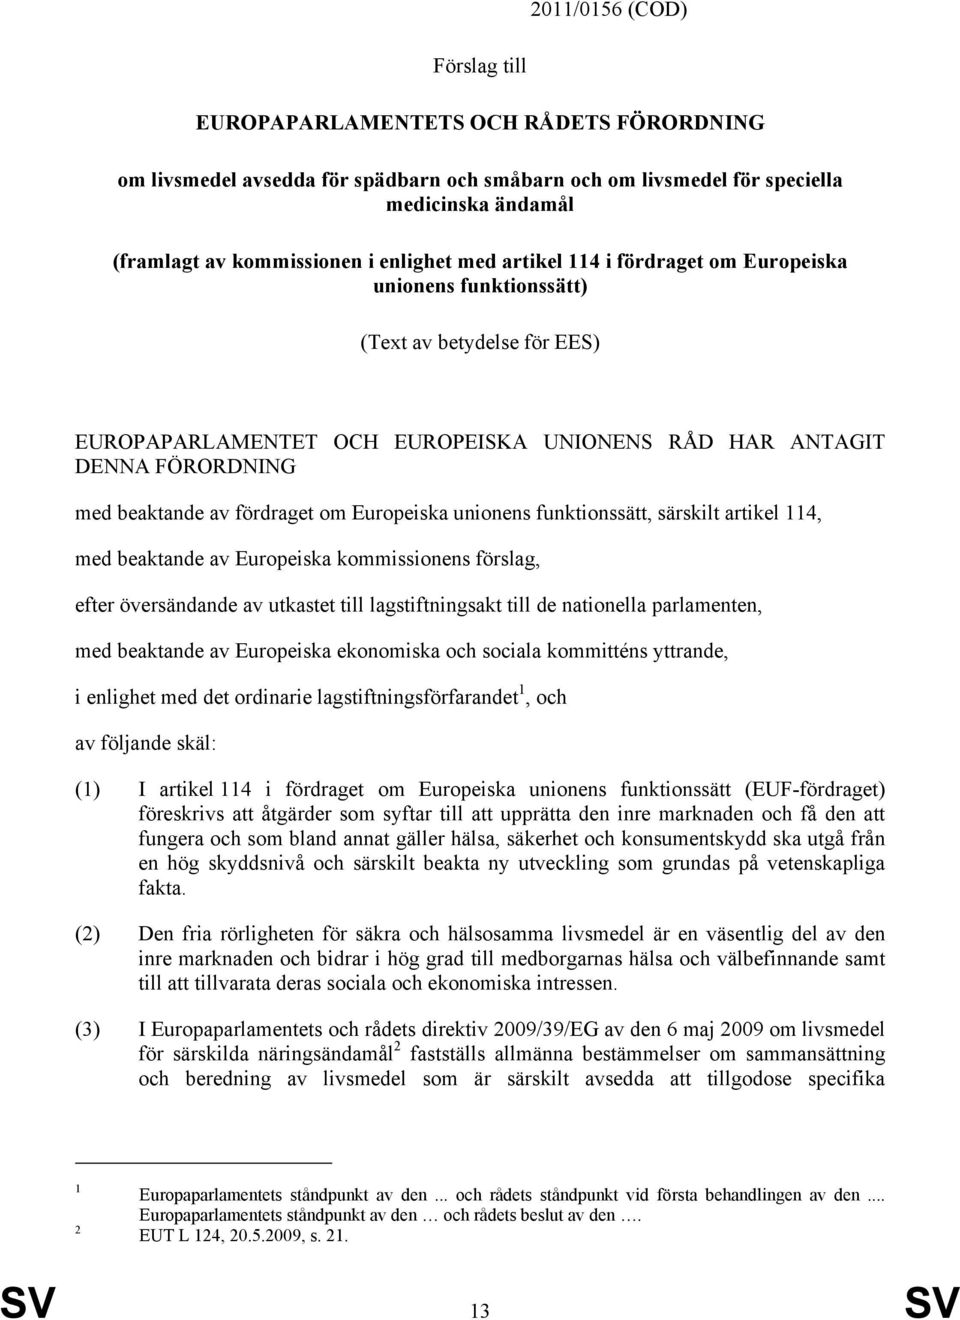 fördraget om Europeiska unionens funktionssätt, särskilt artikel 114, med beaktande av Europeiska kommissionens förslag, efter översändande av utkastet till lagstiftningsakt till de nationella